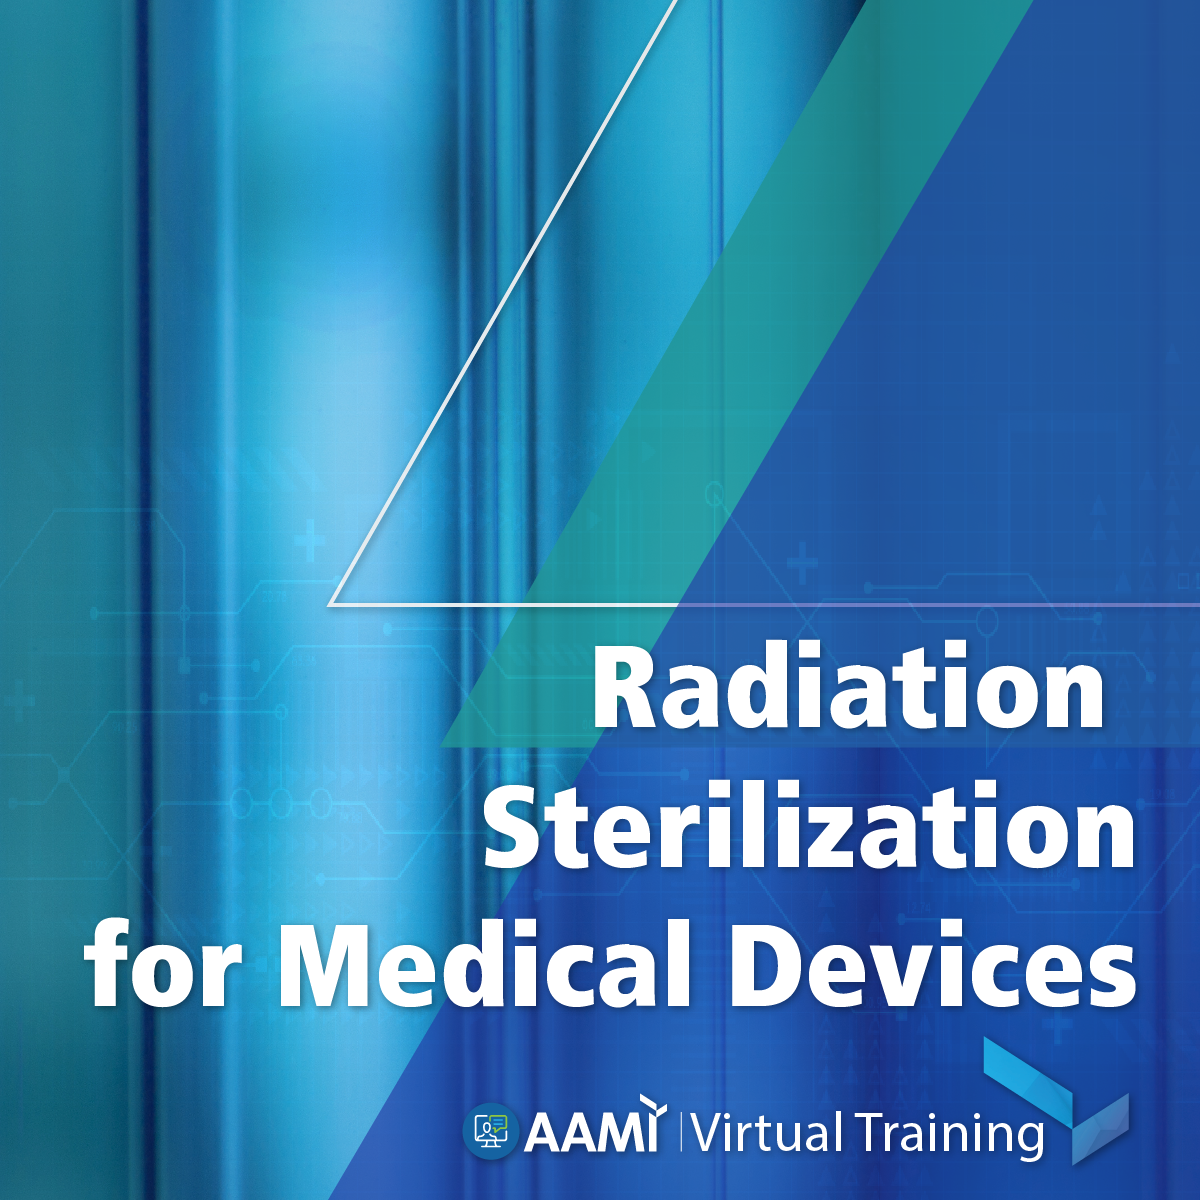 raditation-sterilization-forMDMs-newart-01